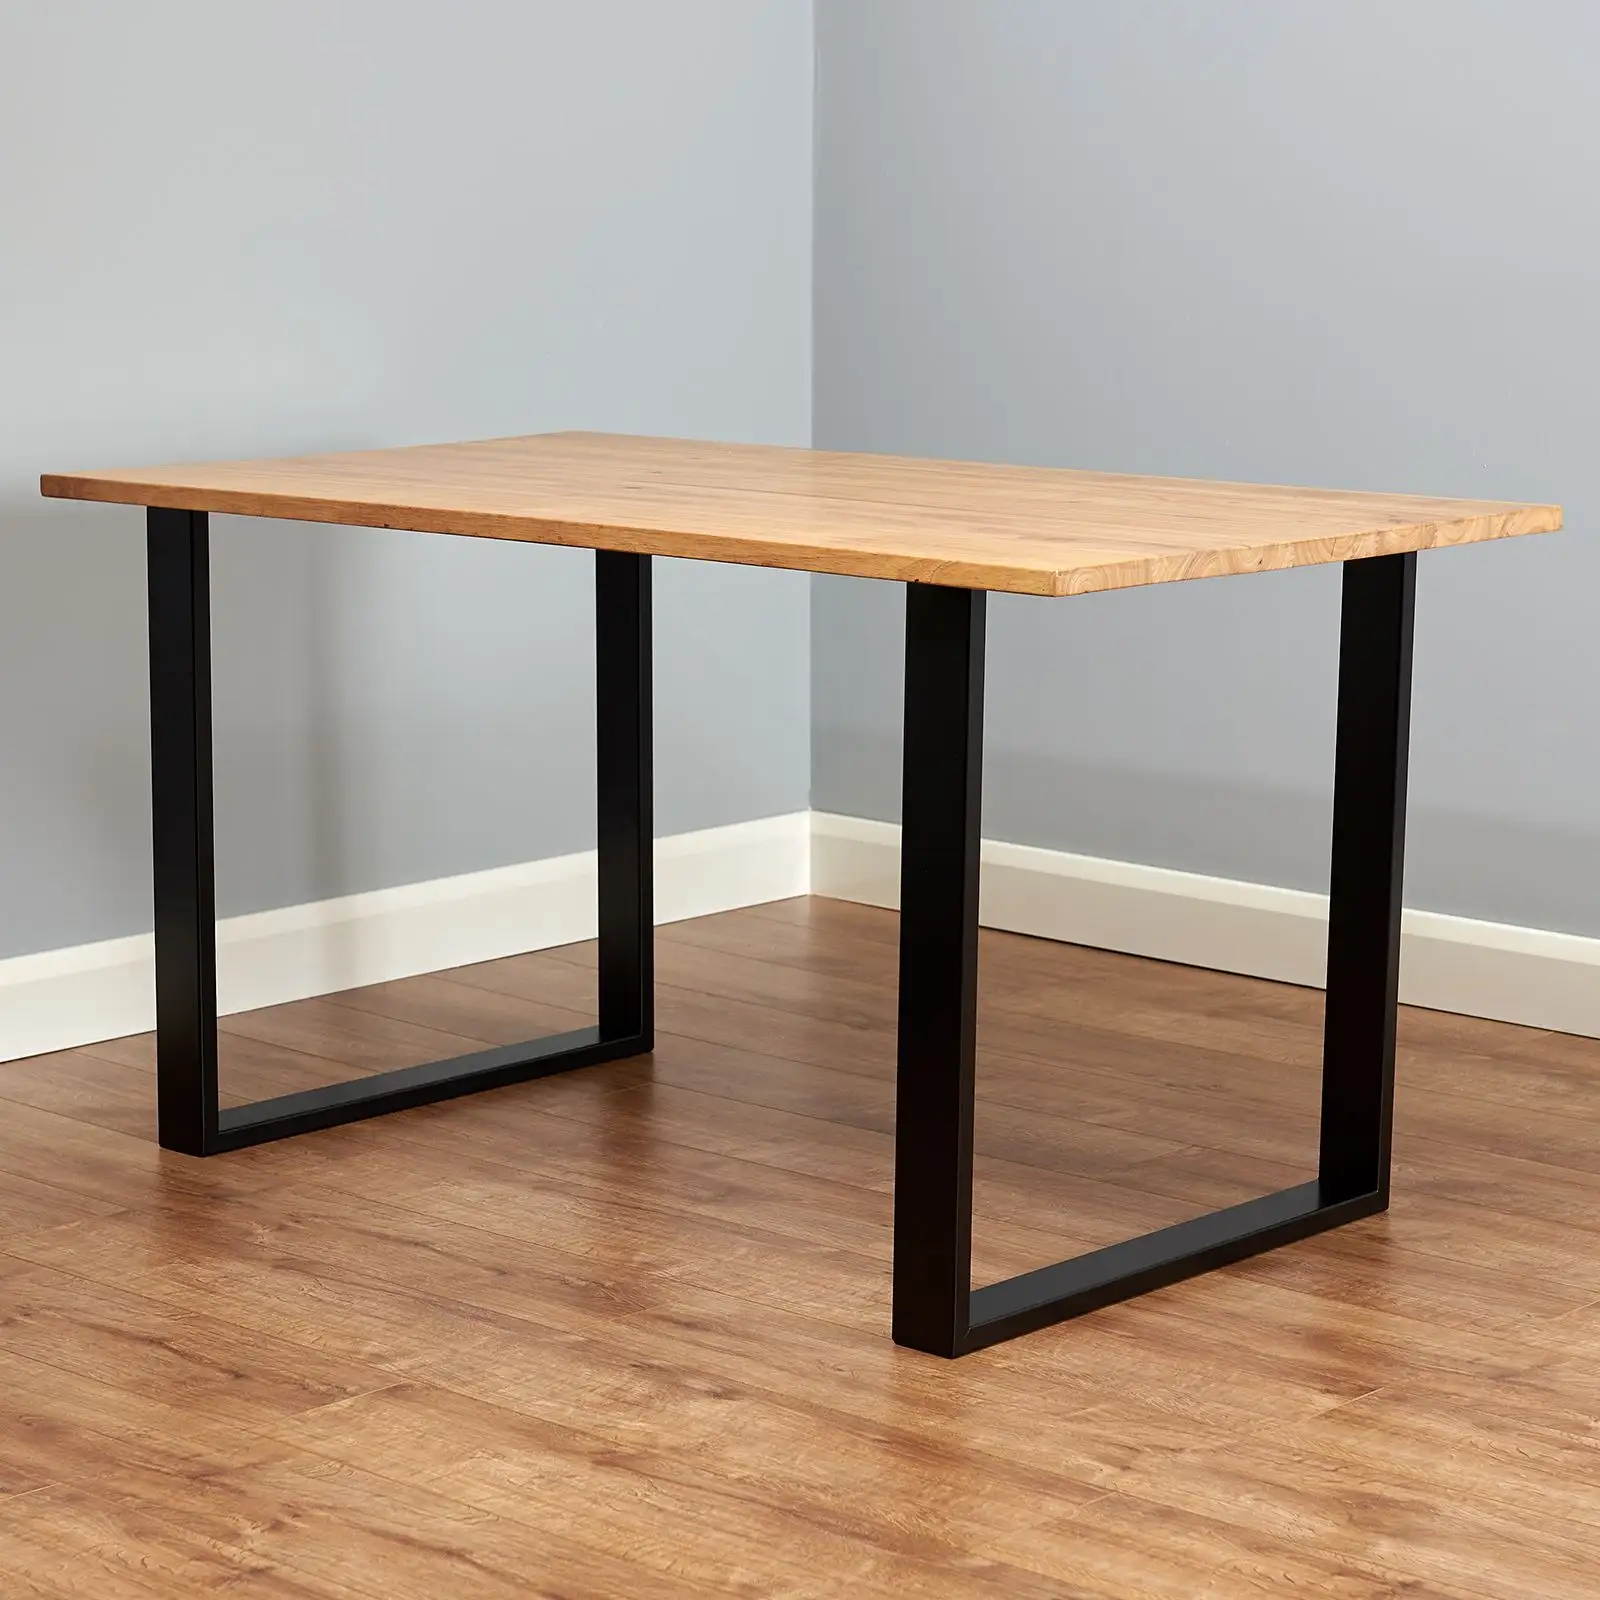 ขาโต๊ะเฟอร์นิเจอร์รูปทรงสี่เหลี่ยมสีดำเคลือบผงแบบทนทานขาโต๊ะ